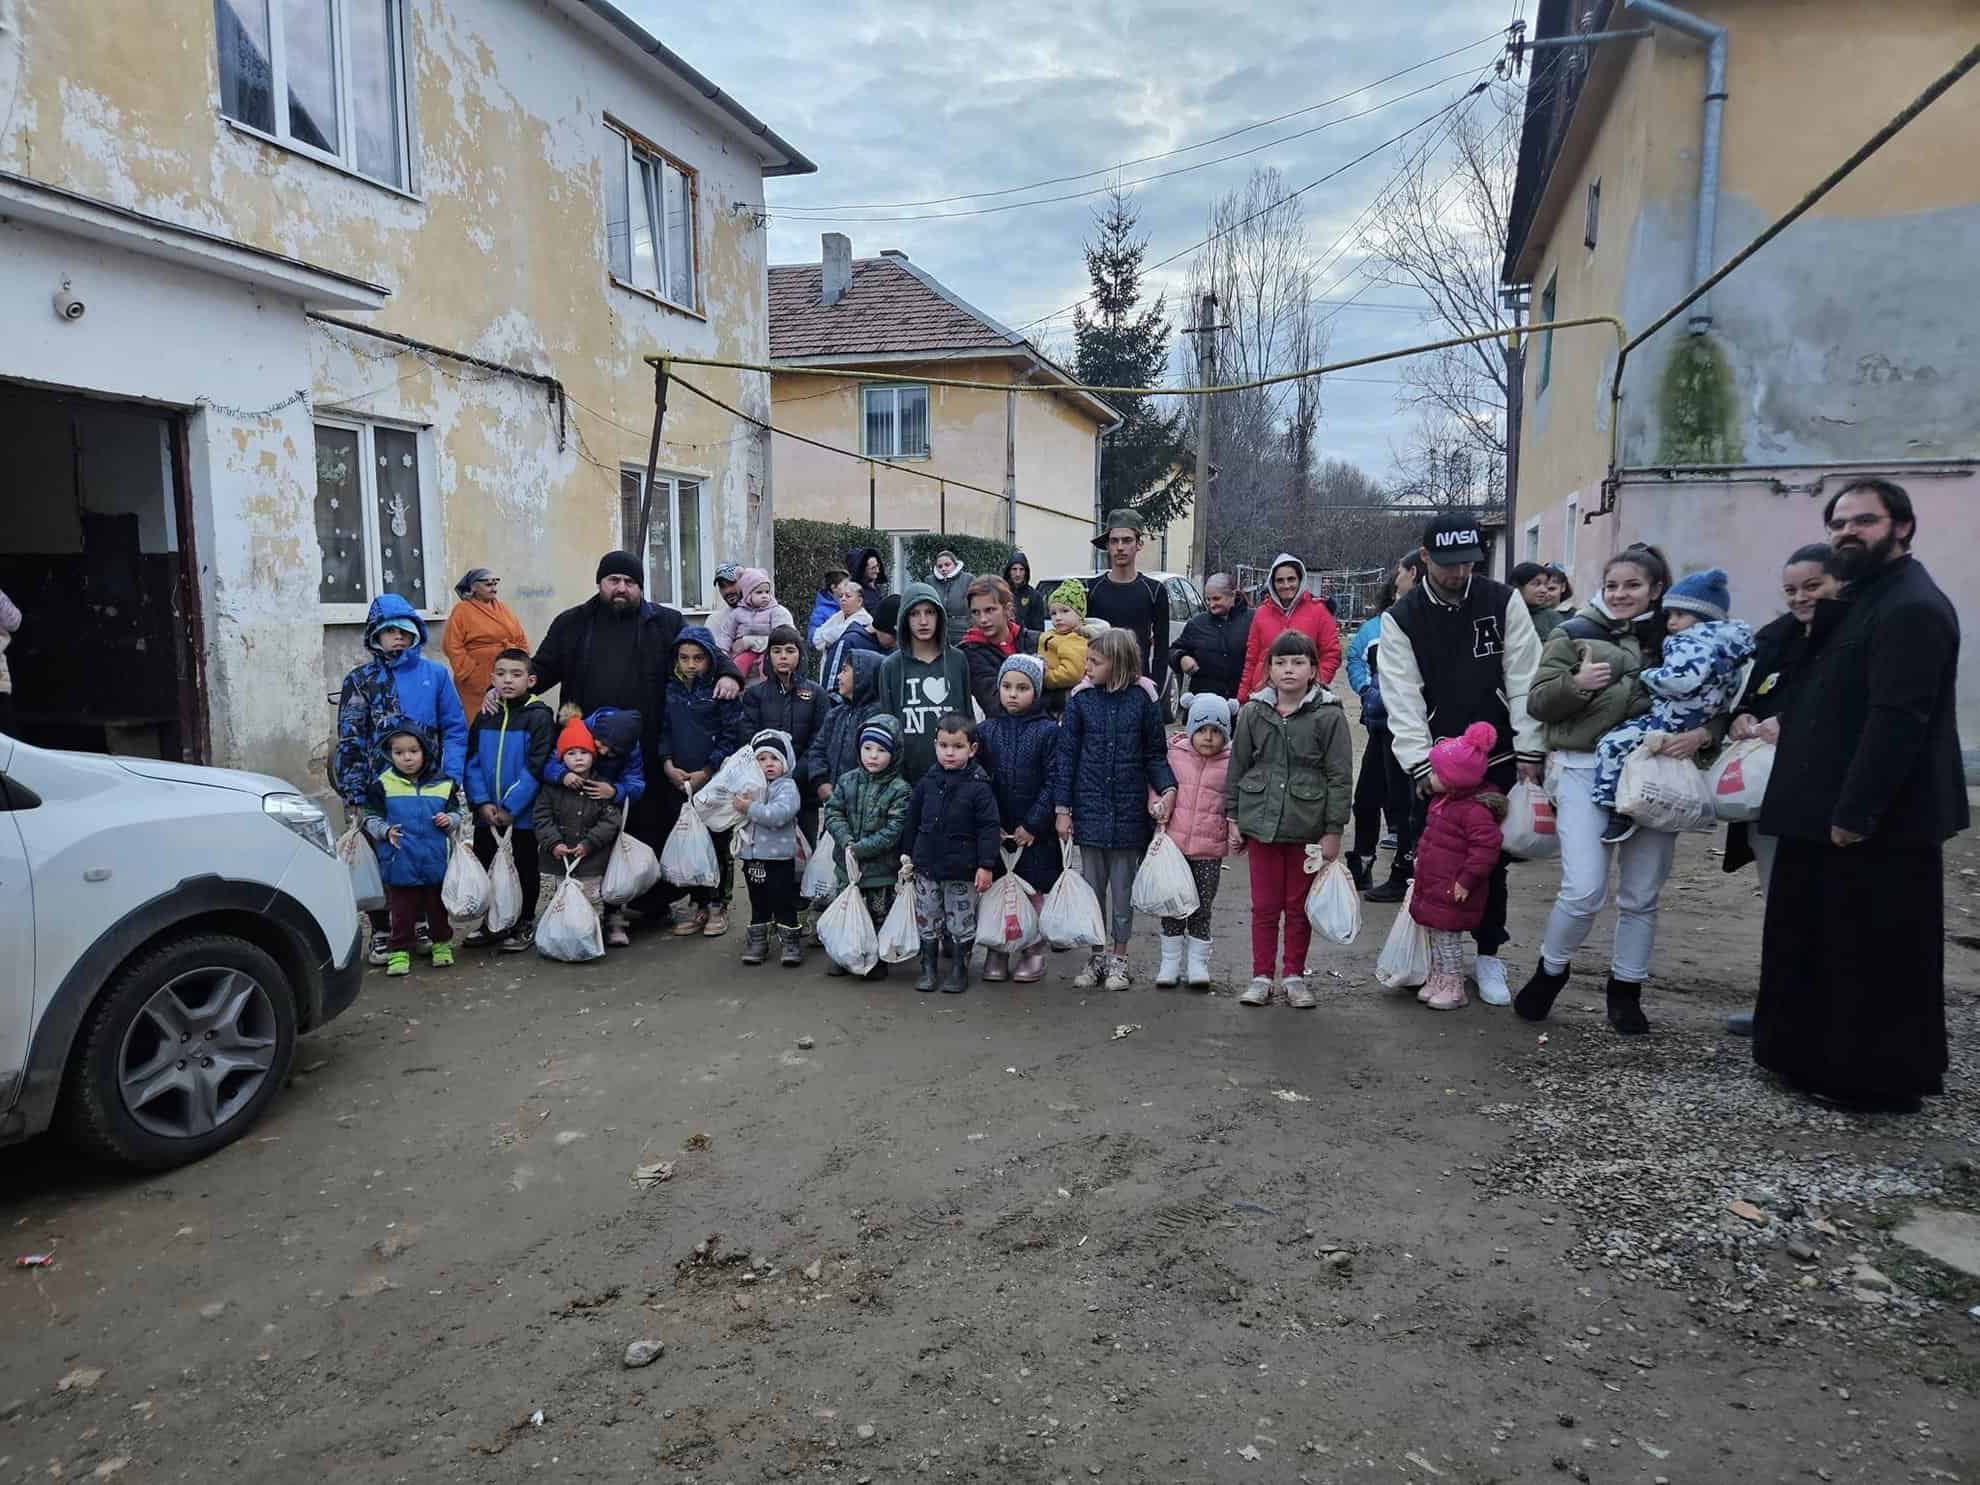 biserica ortodoxă din cisnădie a oferit daruri copiilor defavorizați de sfântul nicolae (foto)